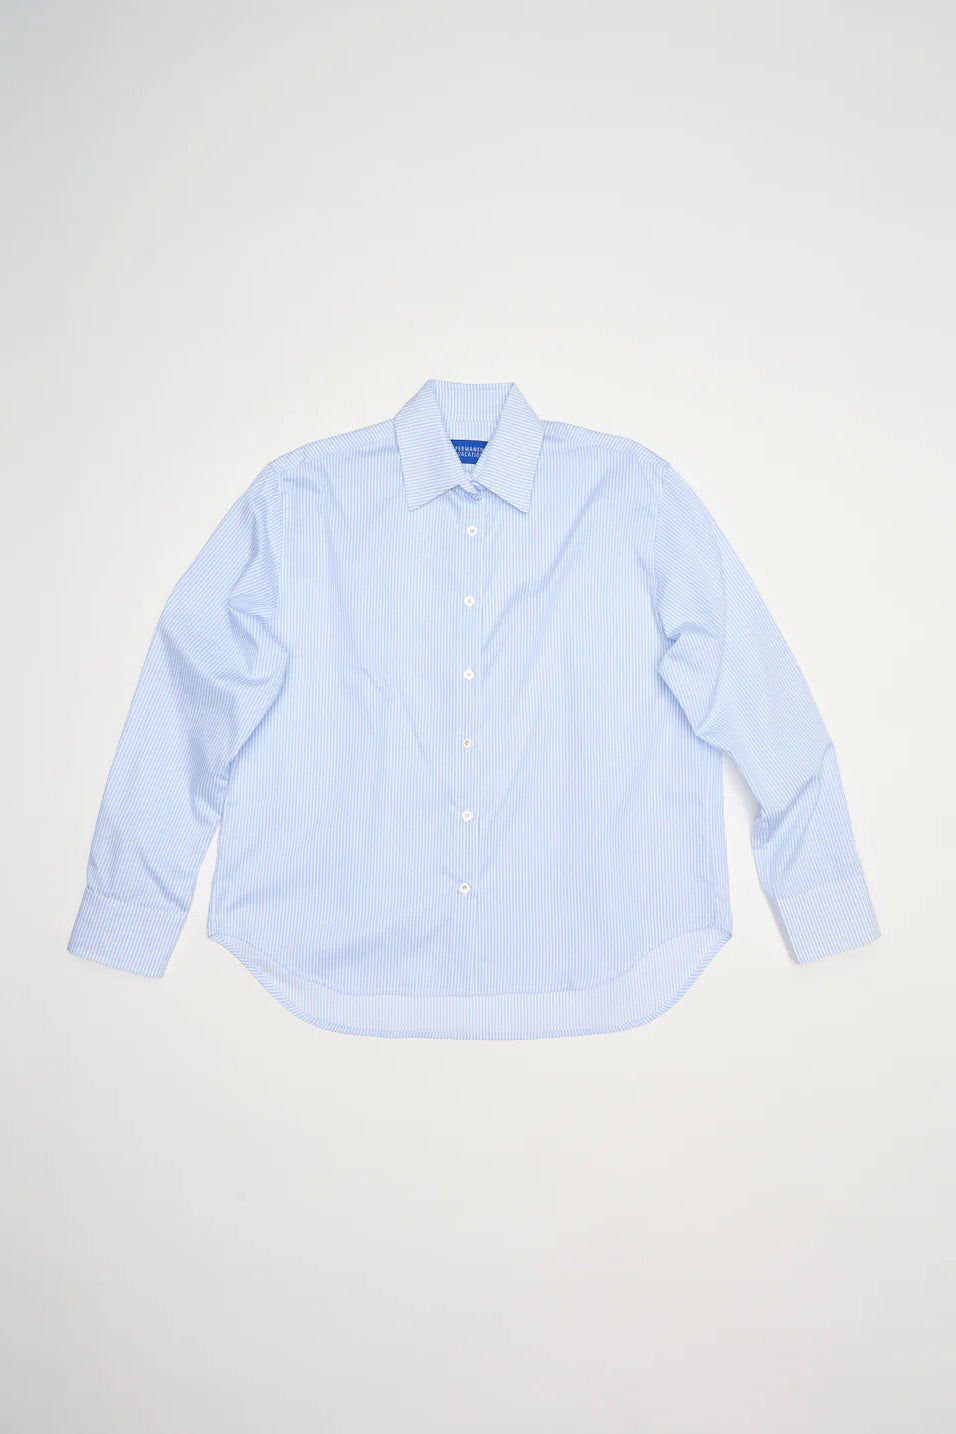 PV Technique Shirt // Blue Stripe